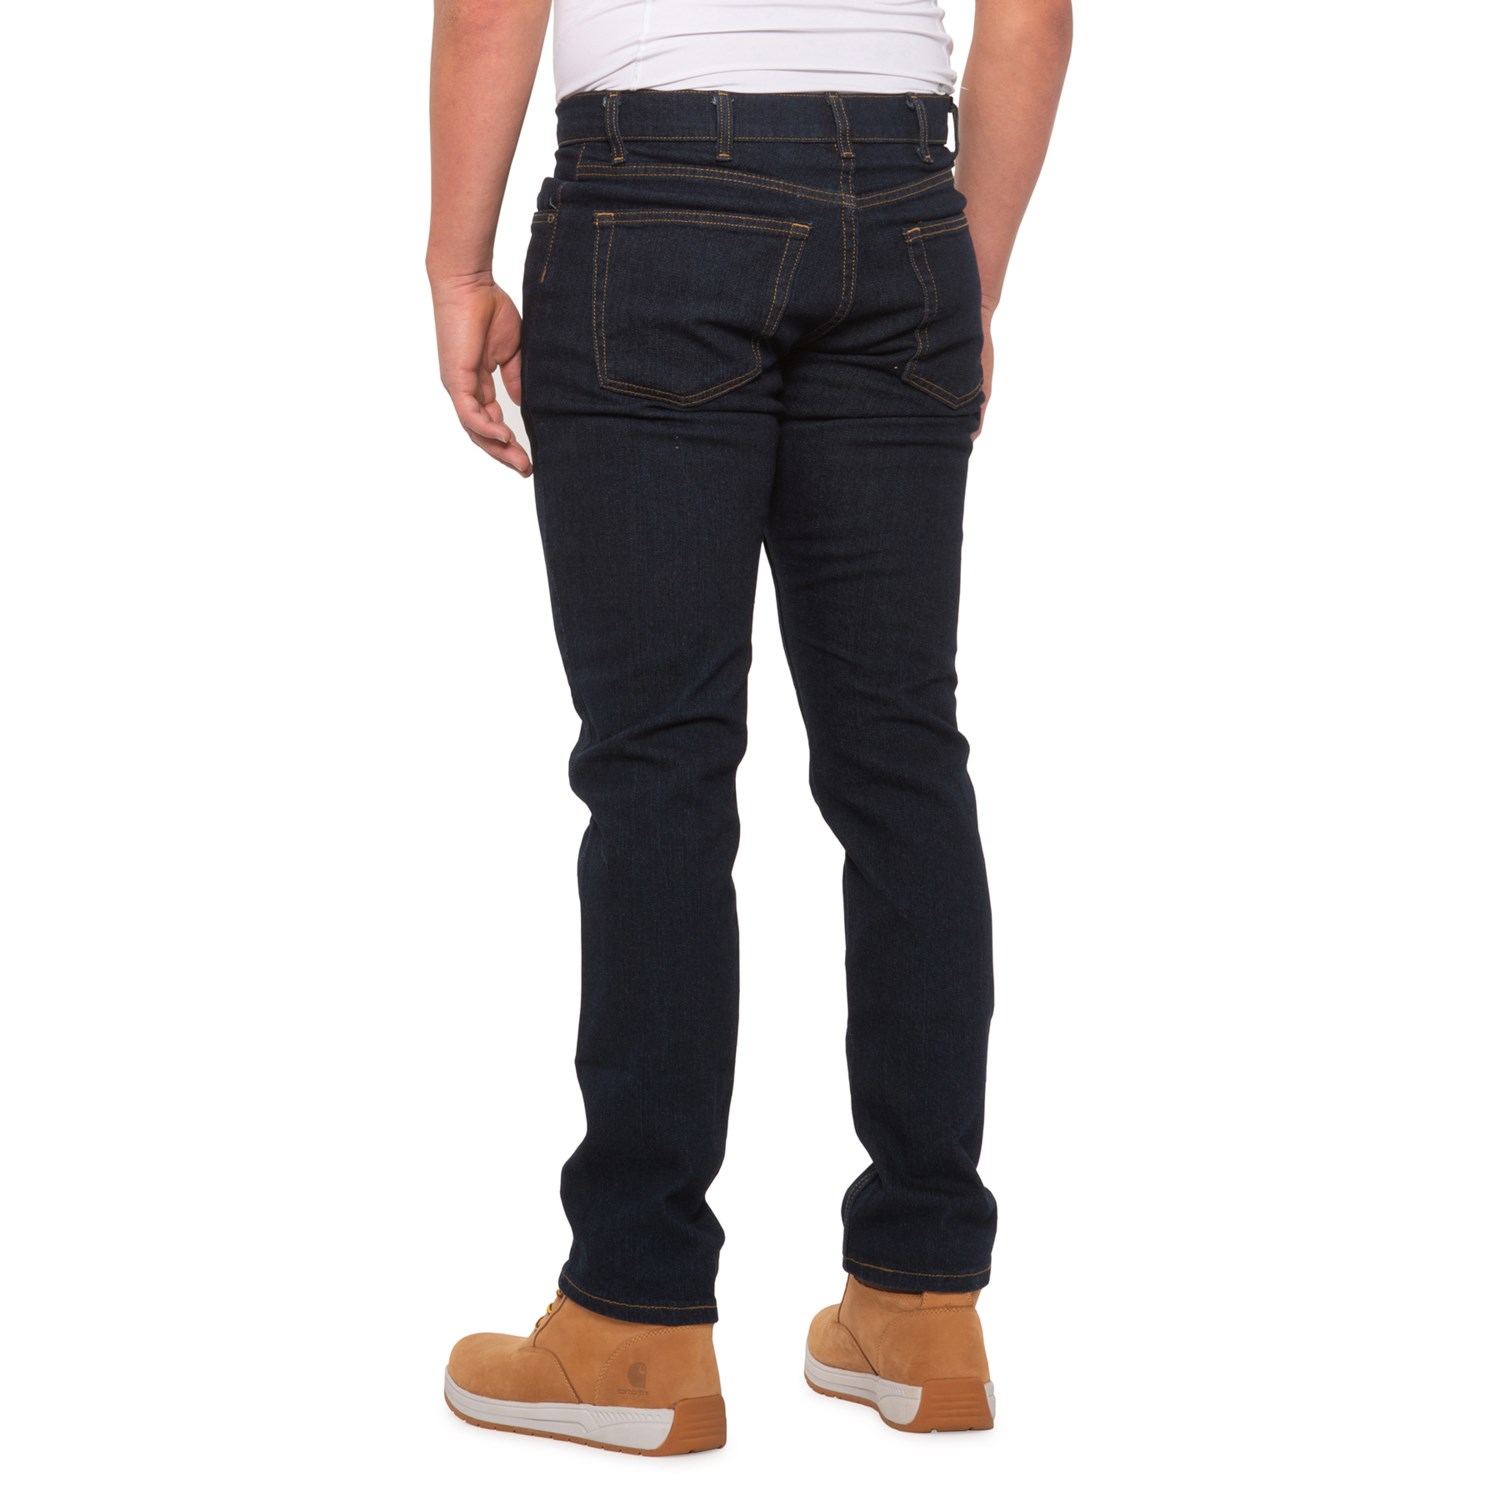 Timberland Pro Grit-N-Grind Flex Work Jeans (For Men) - Save 62%